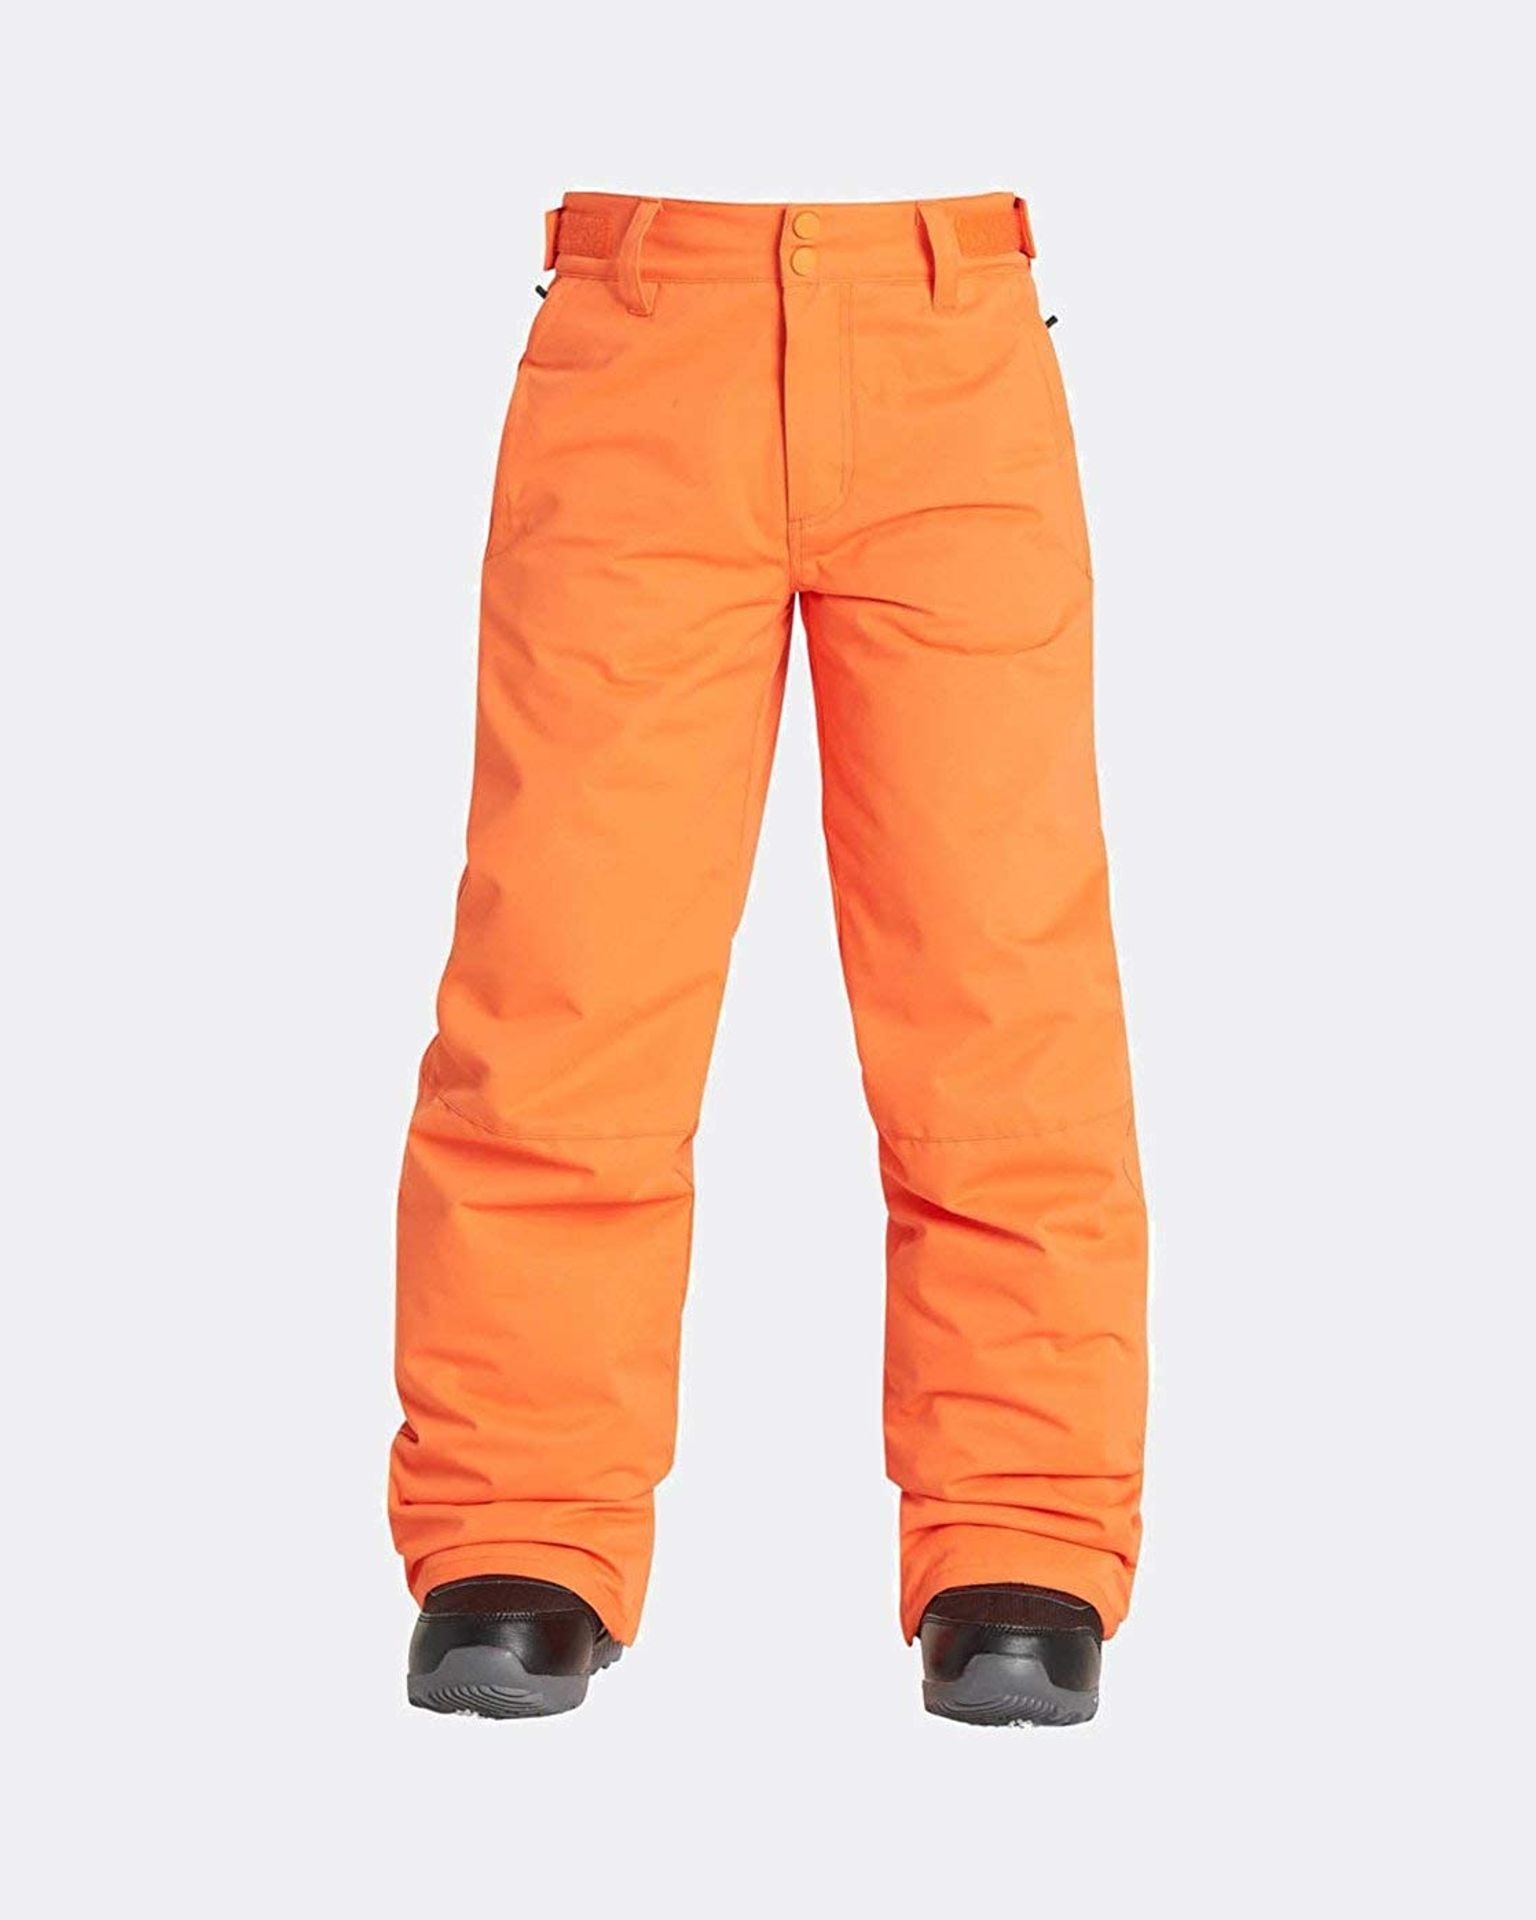 5 x Brand New Billabong Childrens Ski Pants Orange